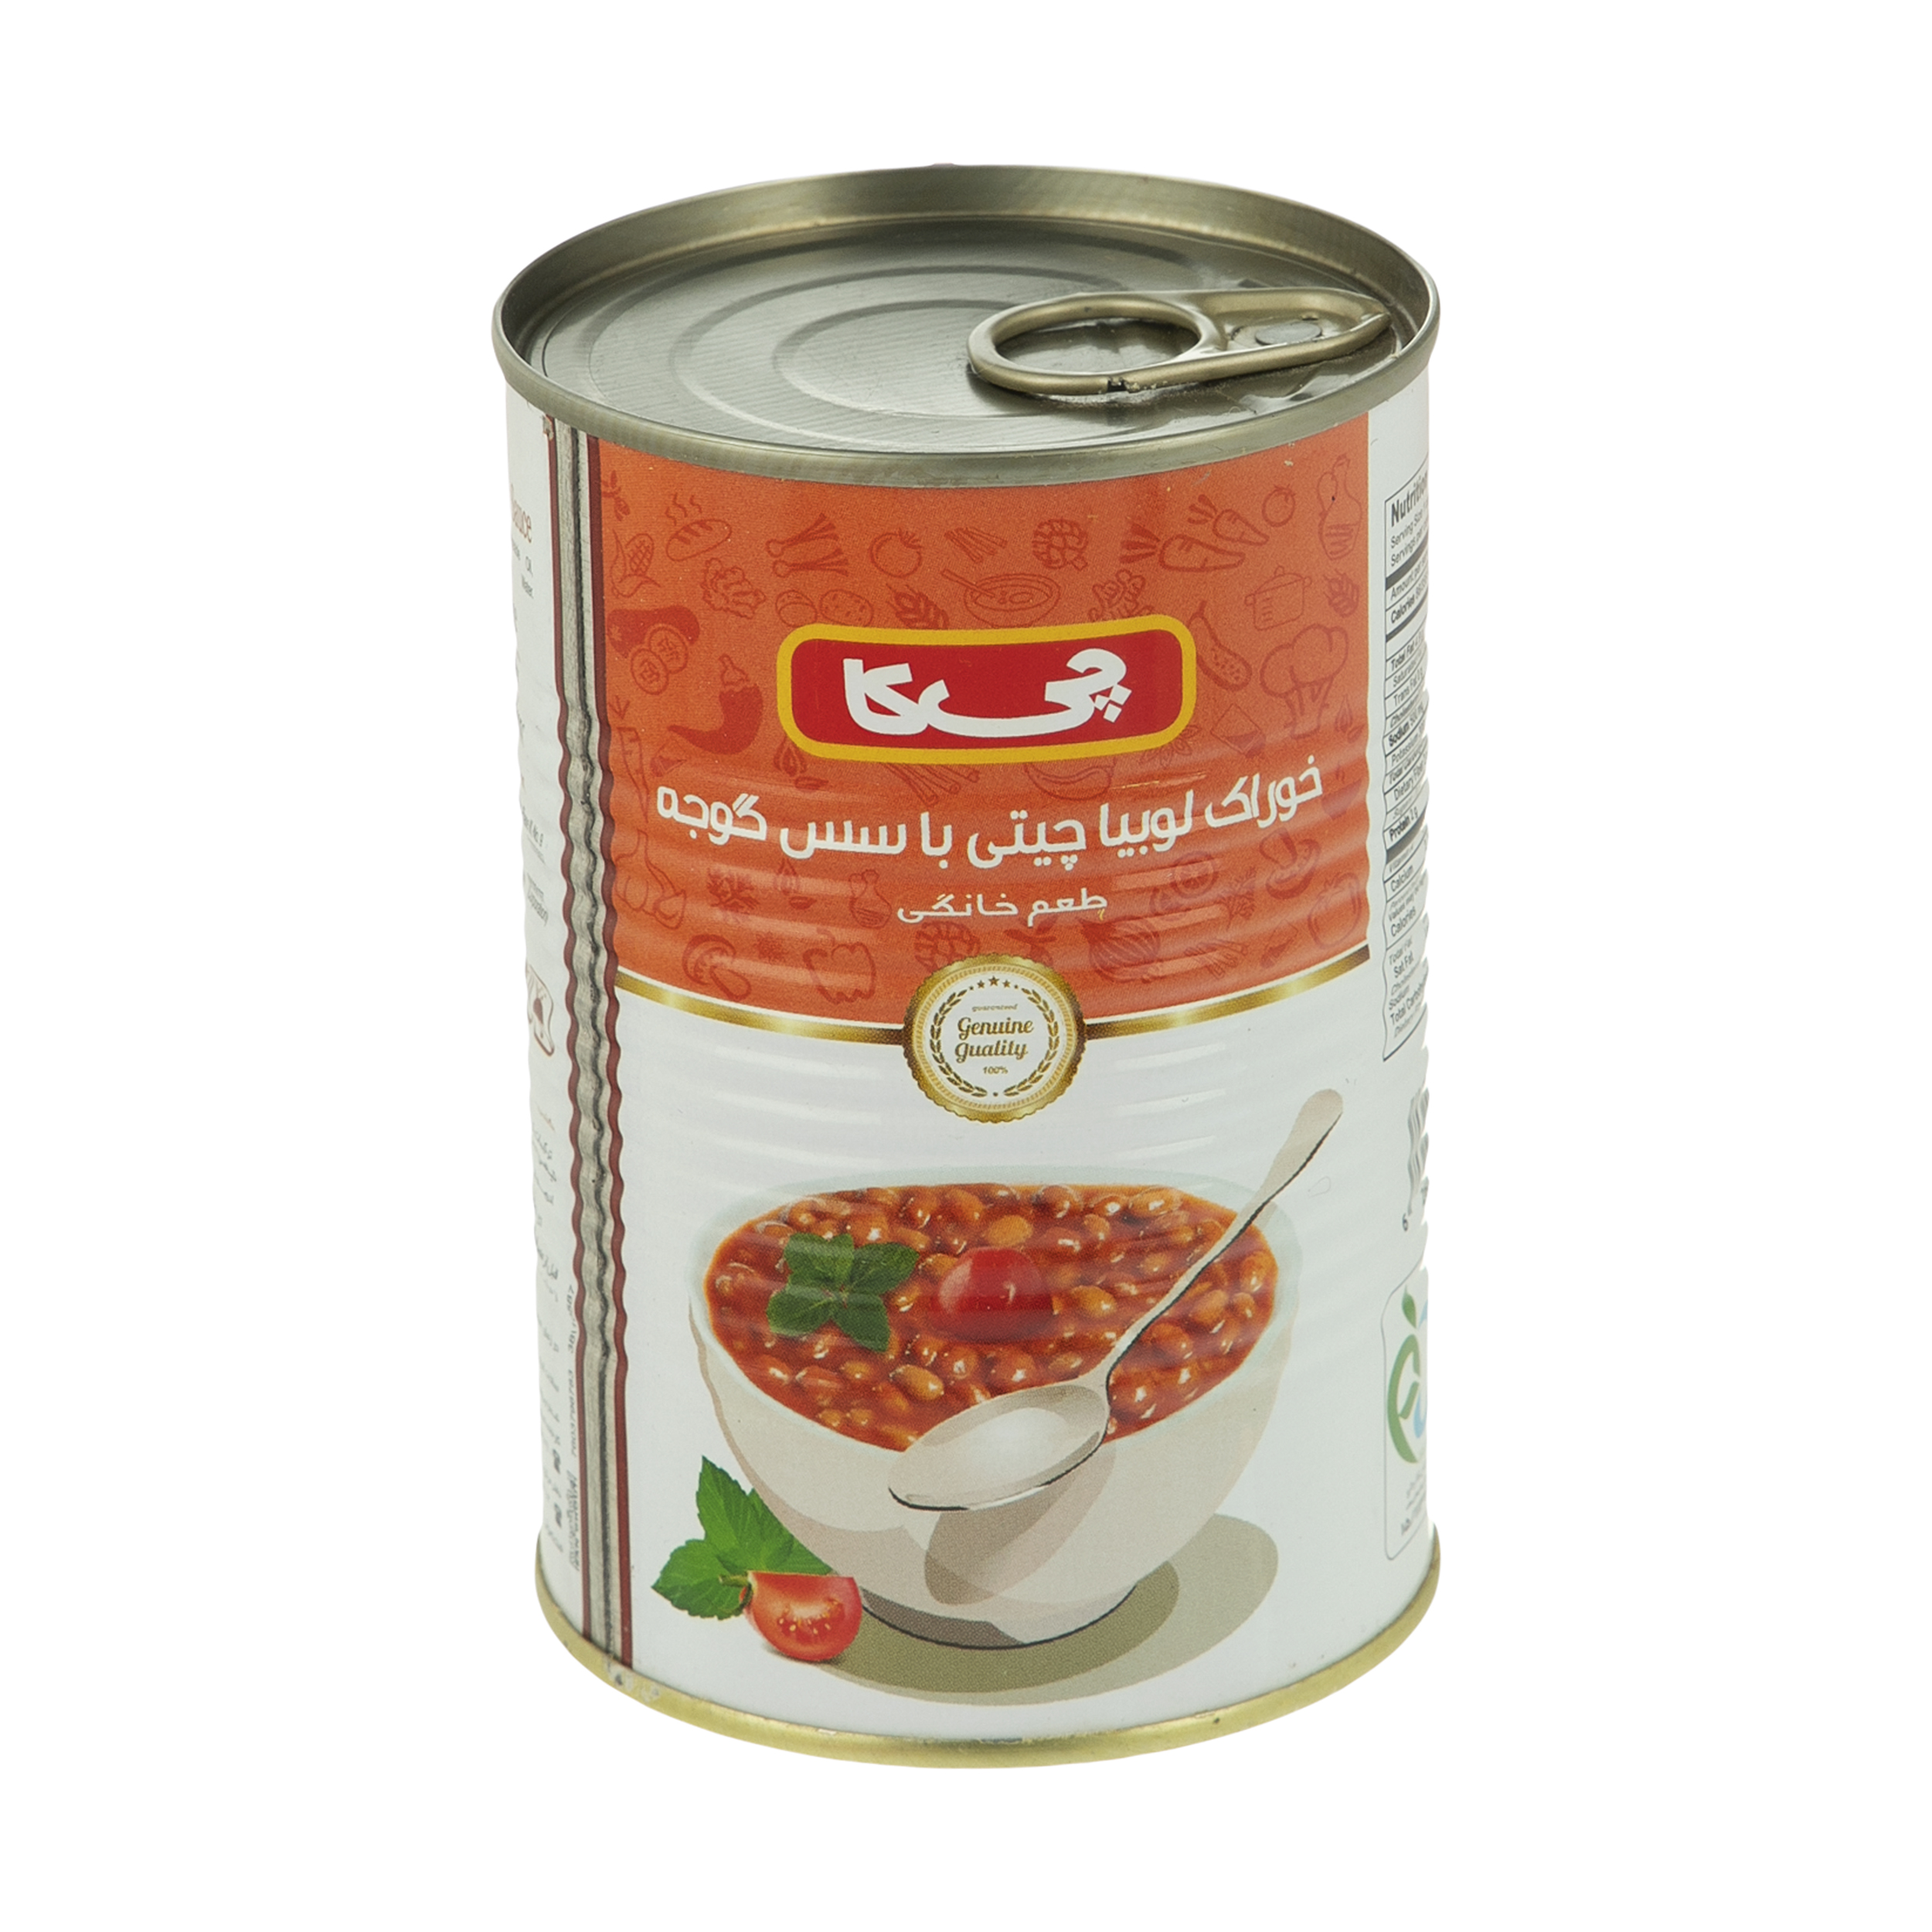  کنسرو لوبیا چیتی با سس گوجه فرنگی چیکا - 420 گرم   